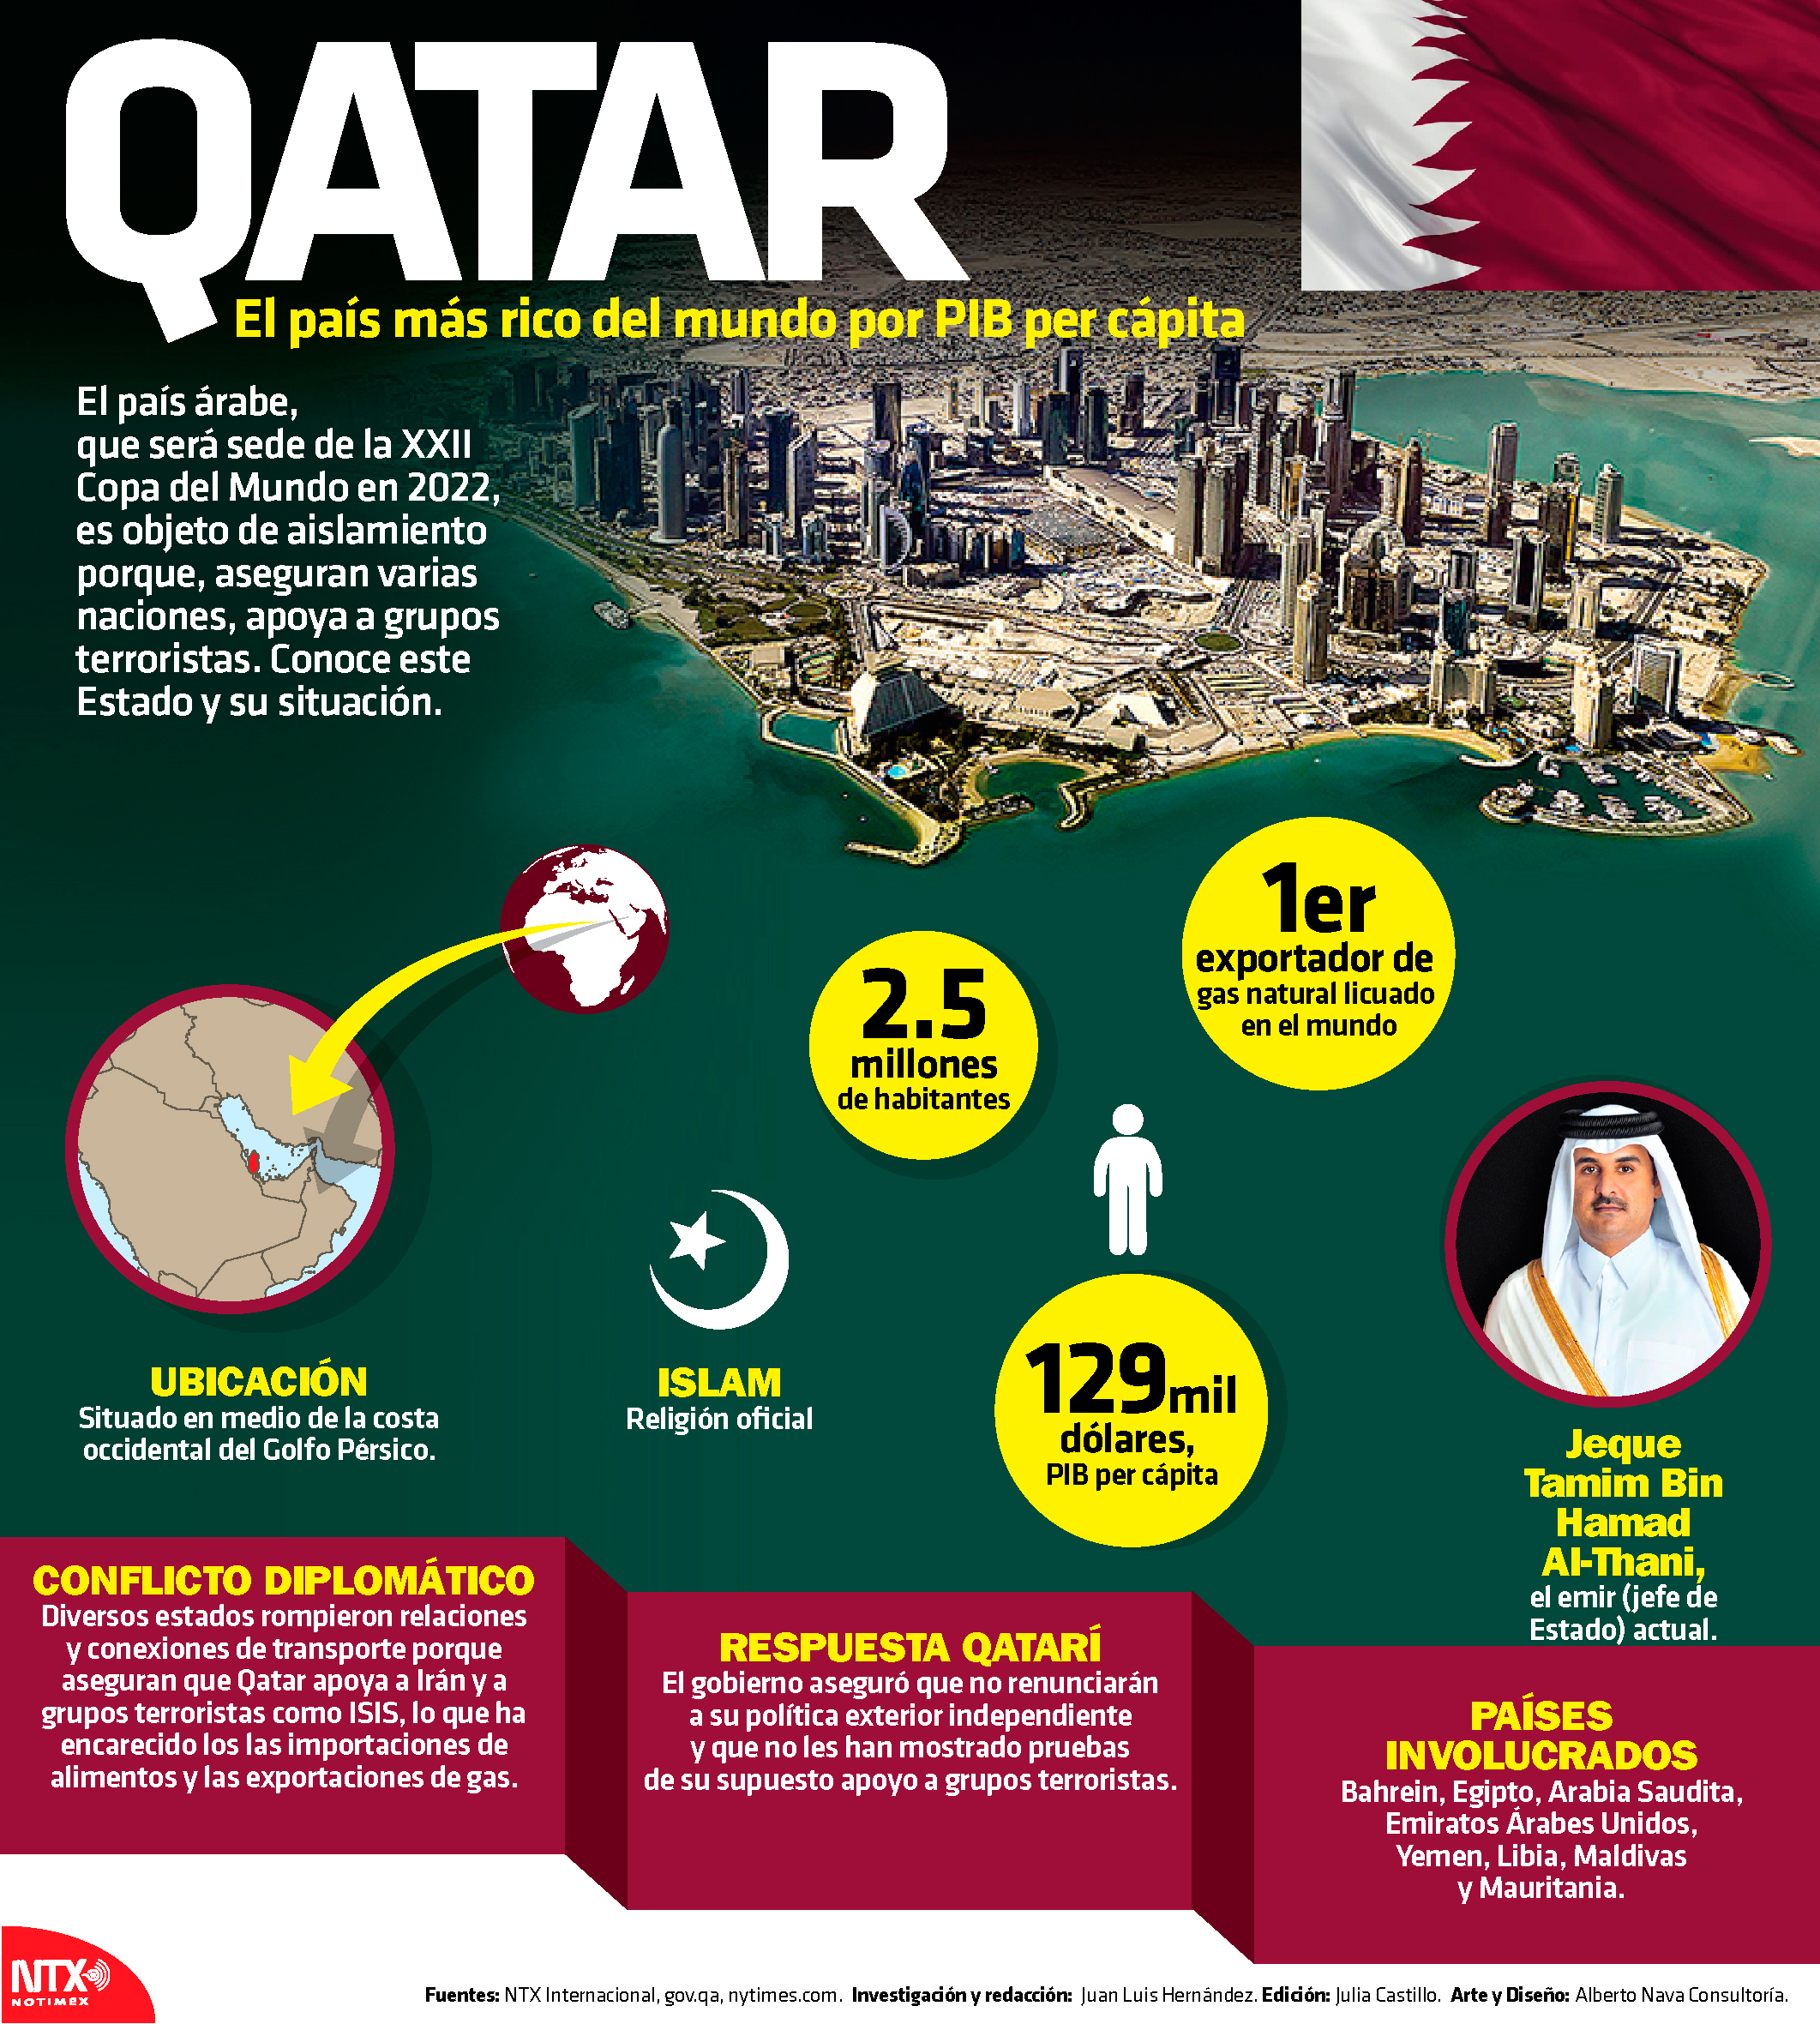 ¿Qué país es más rico Qatar